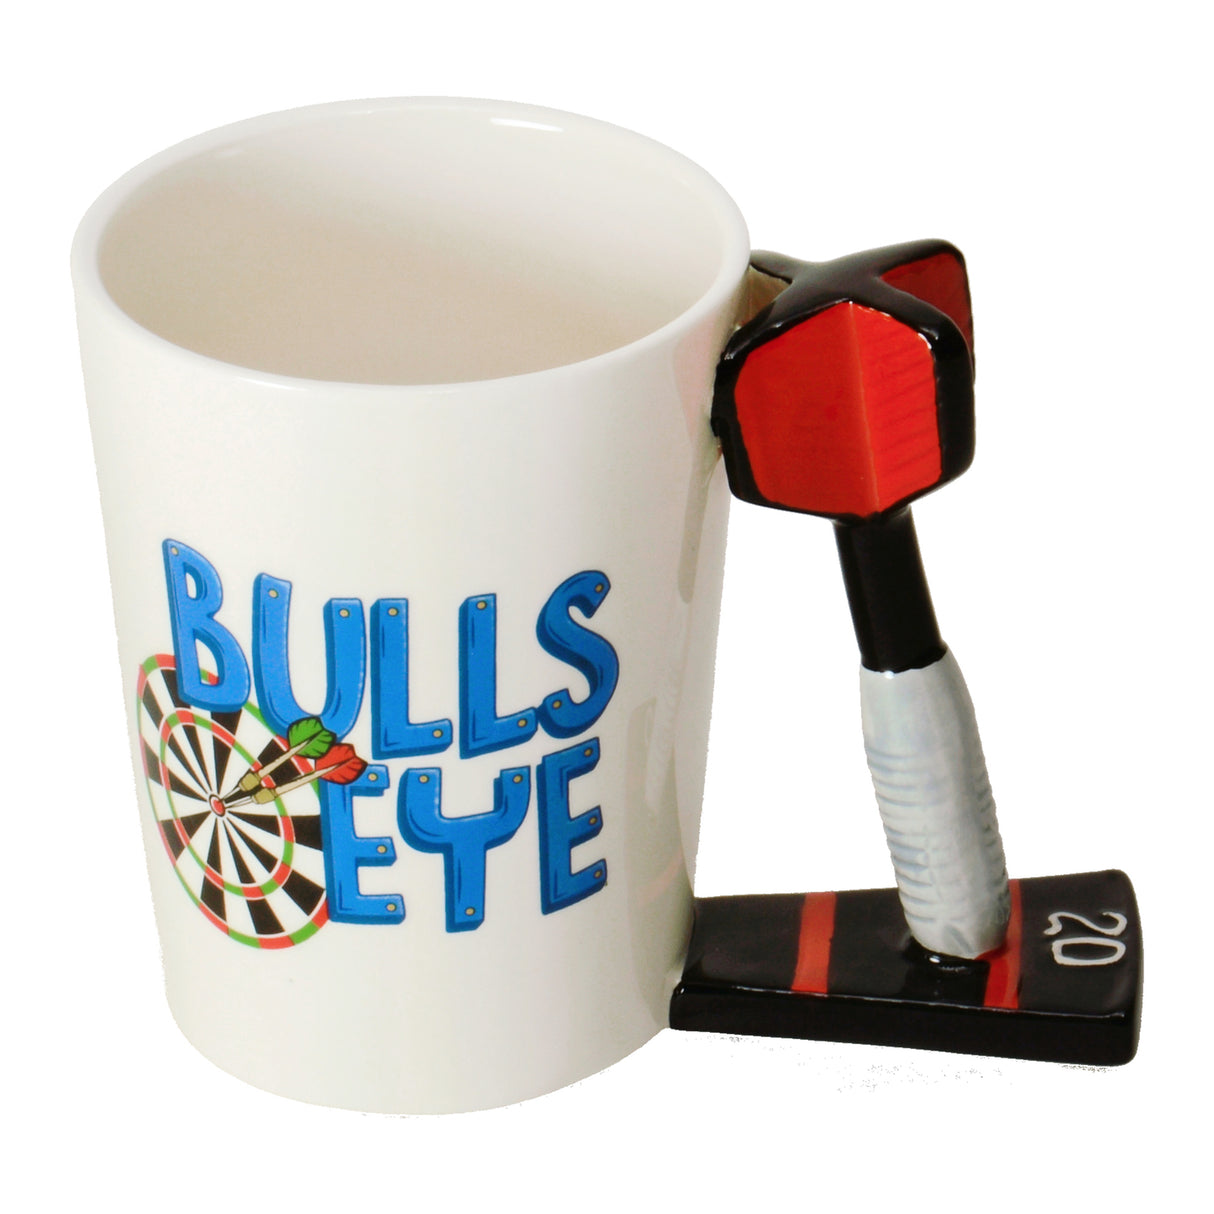 Darts - Bullseye Kaffeebecher mit Dartpfeil als Griff